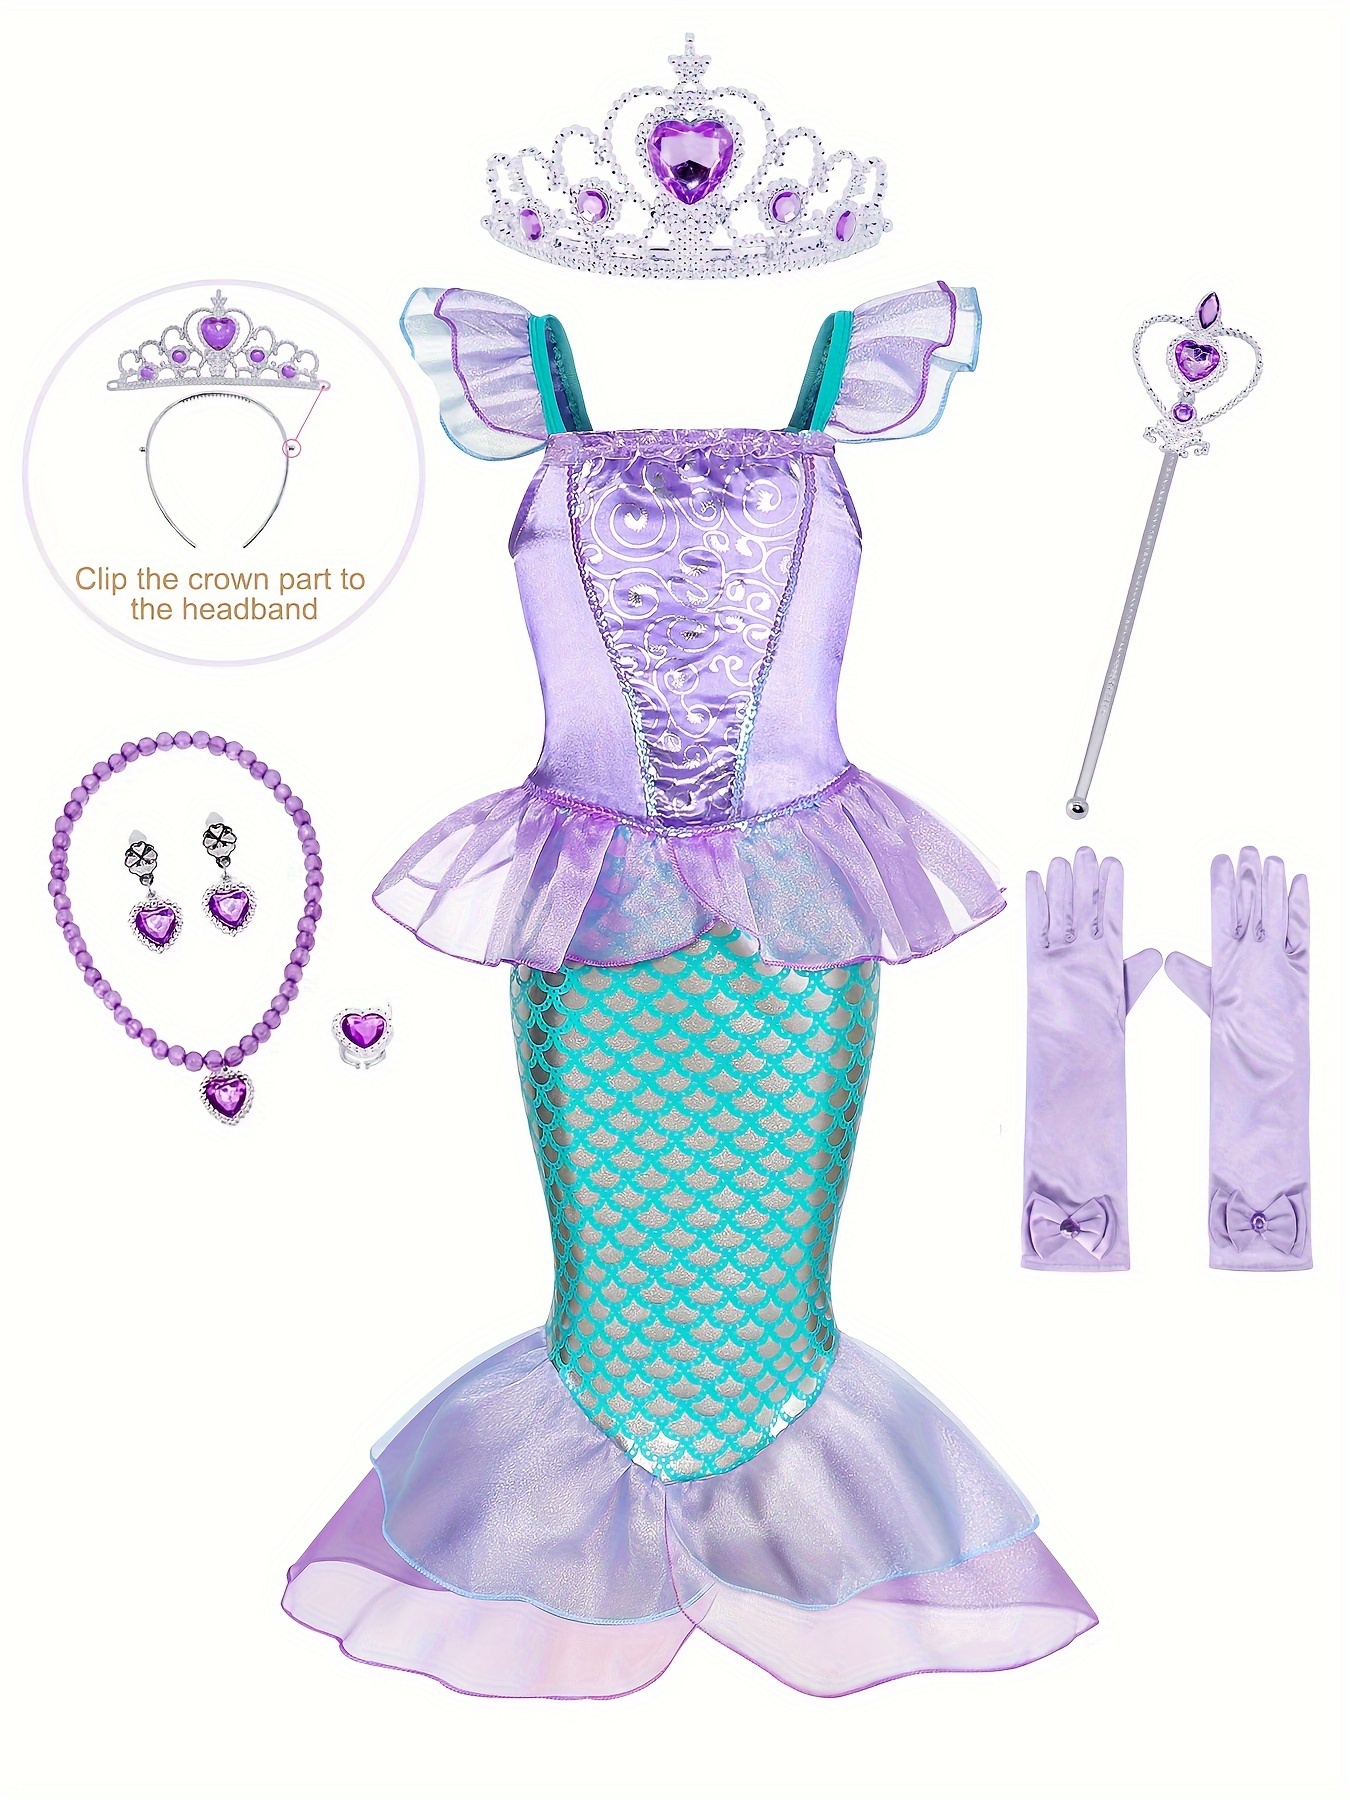 Disfraz de princesa sirena para niña; incluye peluca roja de sirena,  corona, varita mágica y guantes